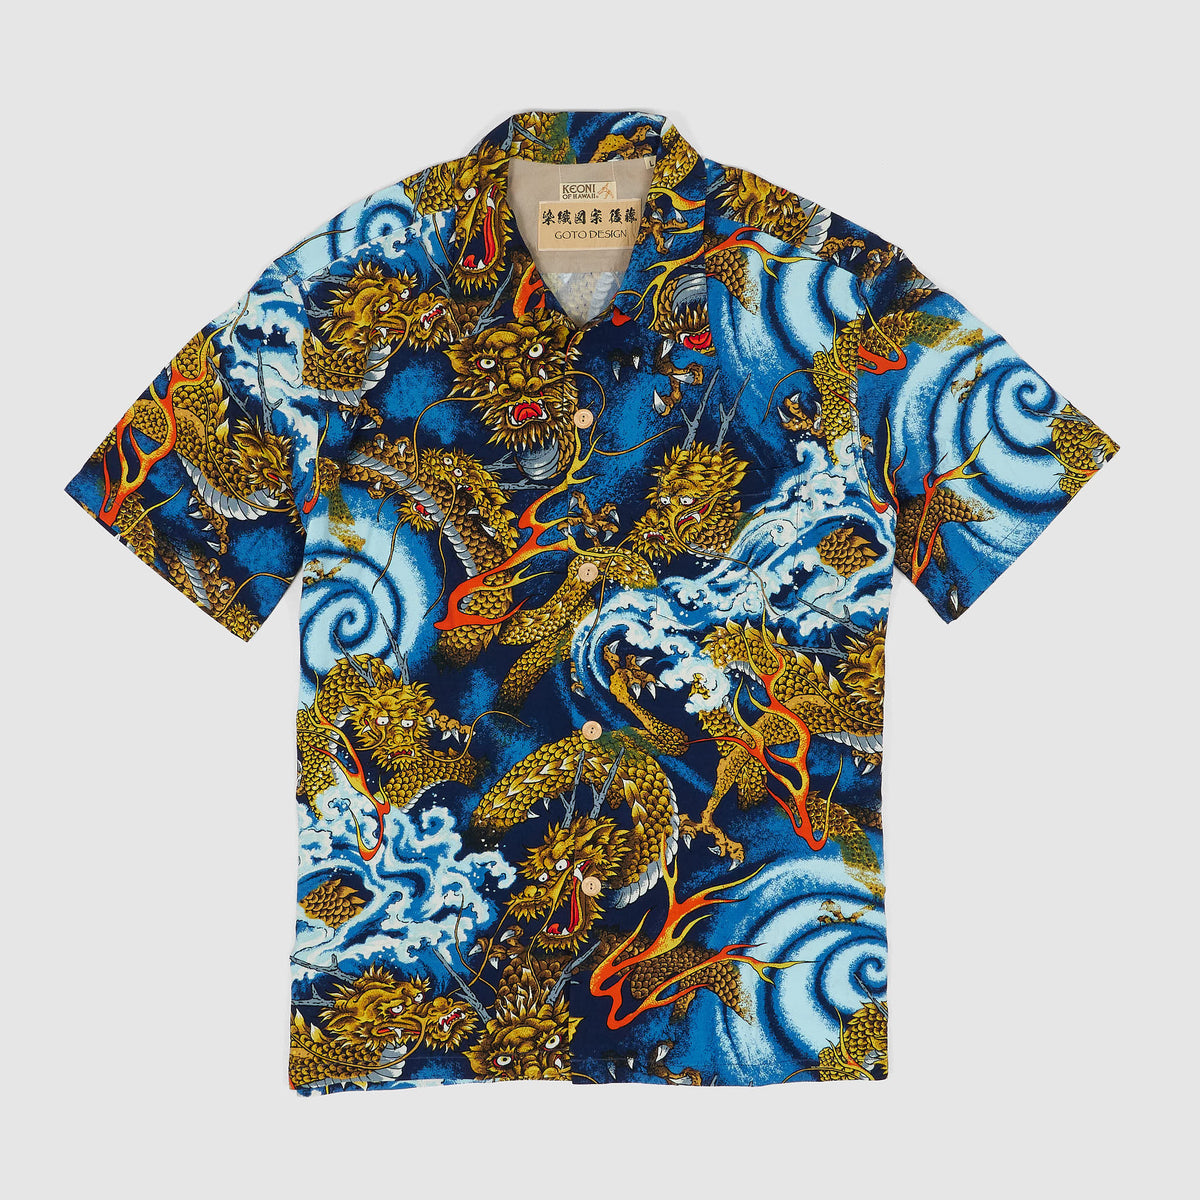 Sun Surf Limited Edition Keoni of HawaiiDragon Short Sleeve Shirt